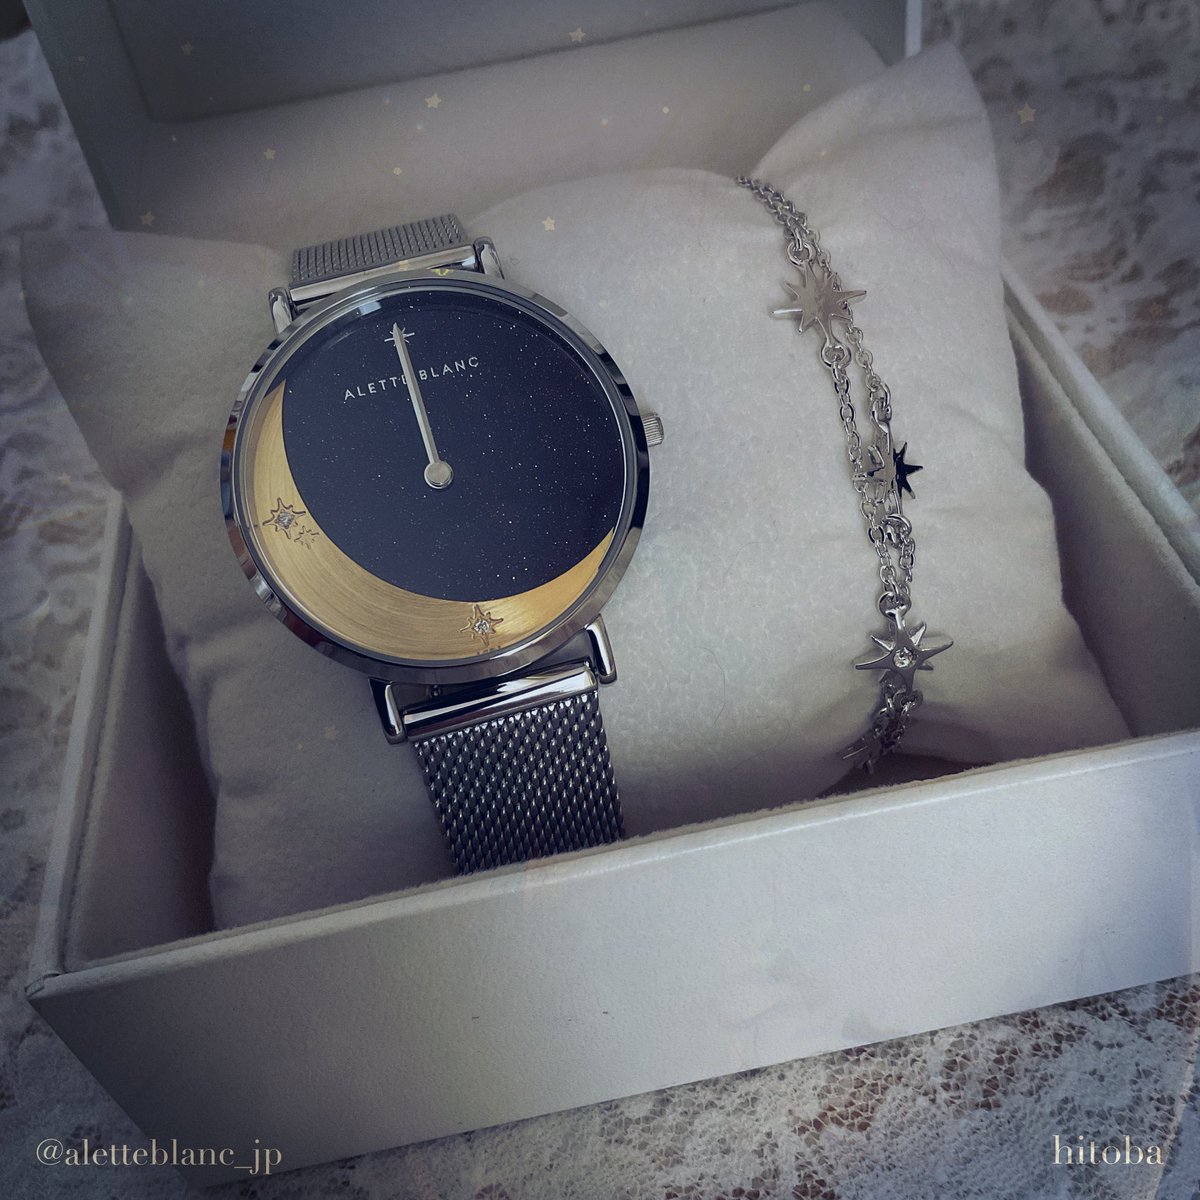 「アレットブラン様(@aletteblanc_jp )から素敵な腕時計をご提供いた」|ひとばのイラスト